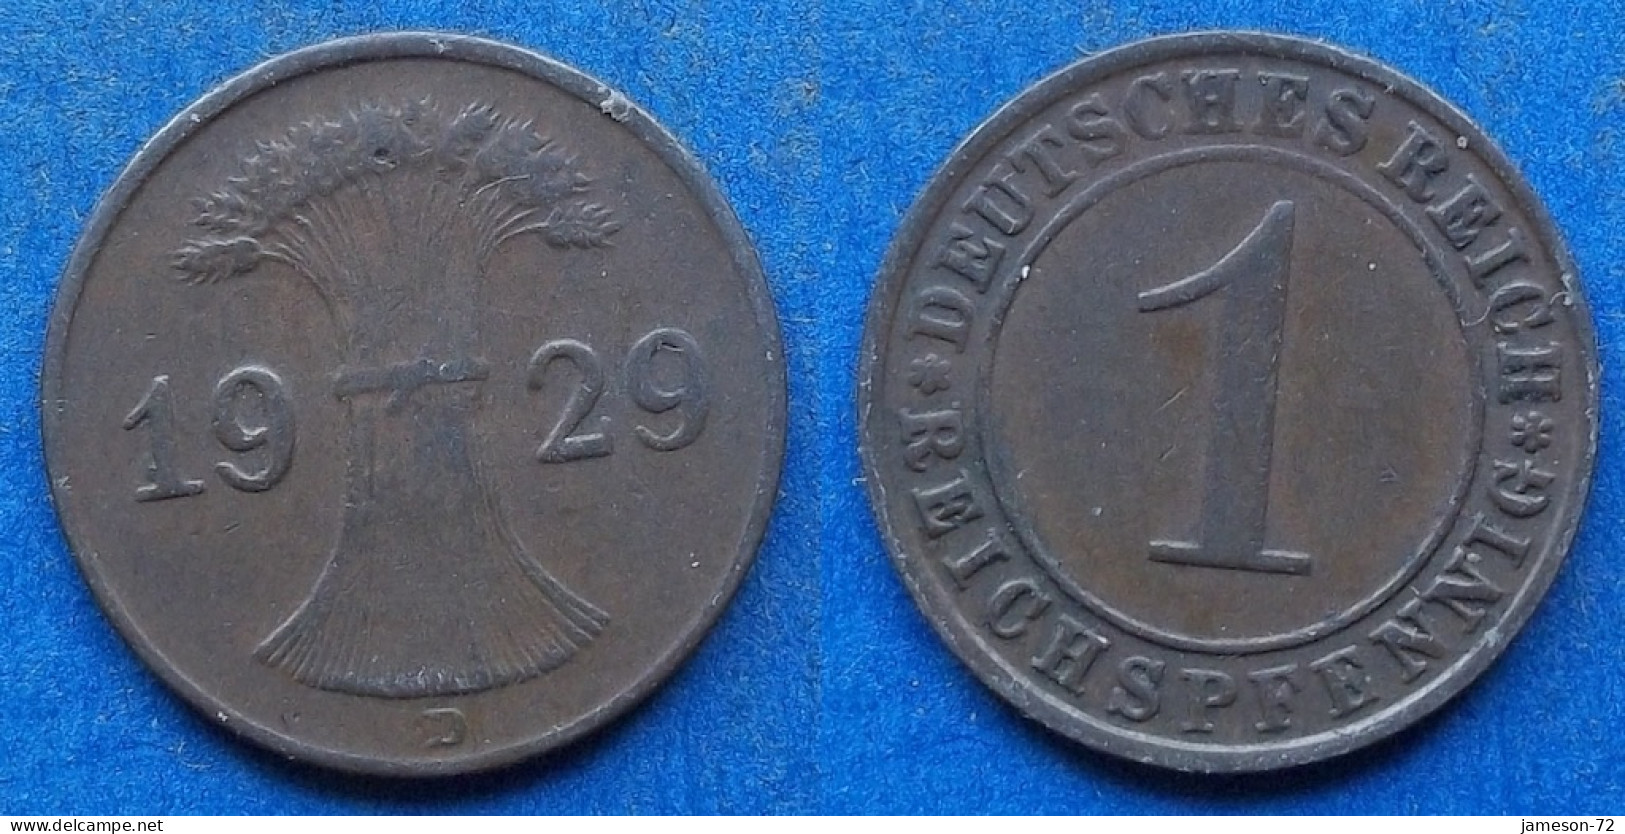 GERMANY - 1 Reichspfennig 1929 D KM# 37 Weimar Republic Reichsmark Coinage (1924-1938) - Edelweiss Coins - 1 Rentenpfennig & 1 Reichspfennig